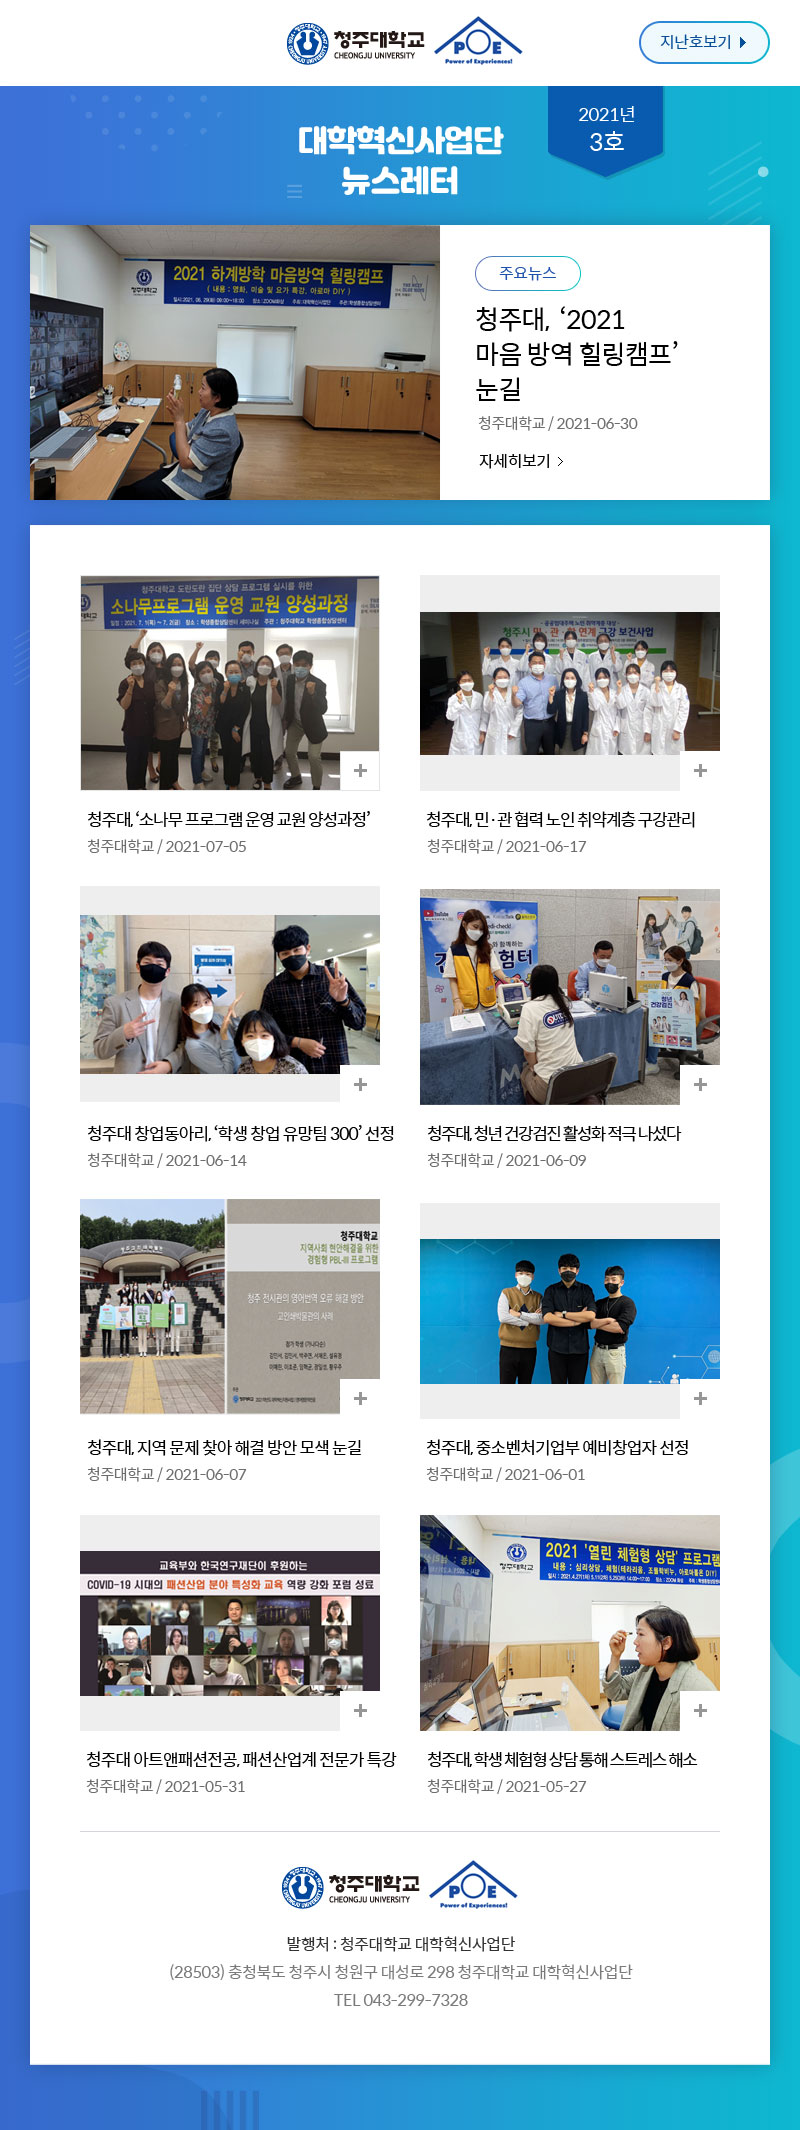 대학혁신사업단 뉴스레터 2021년 3호 뉴스레터